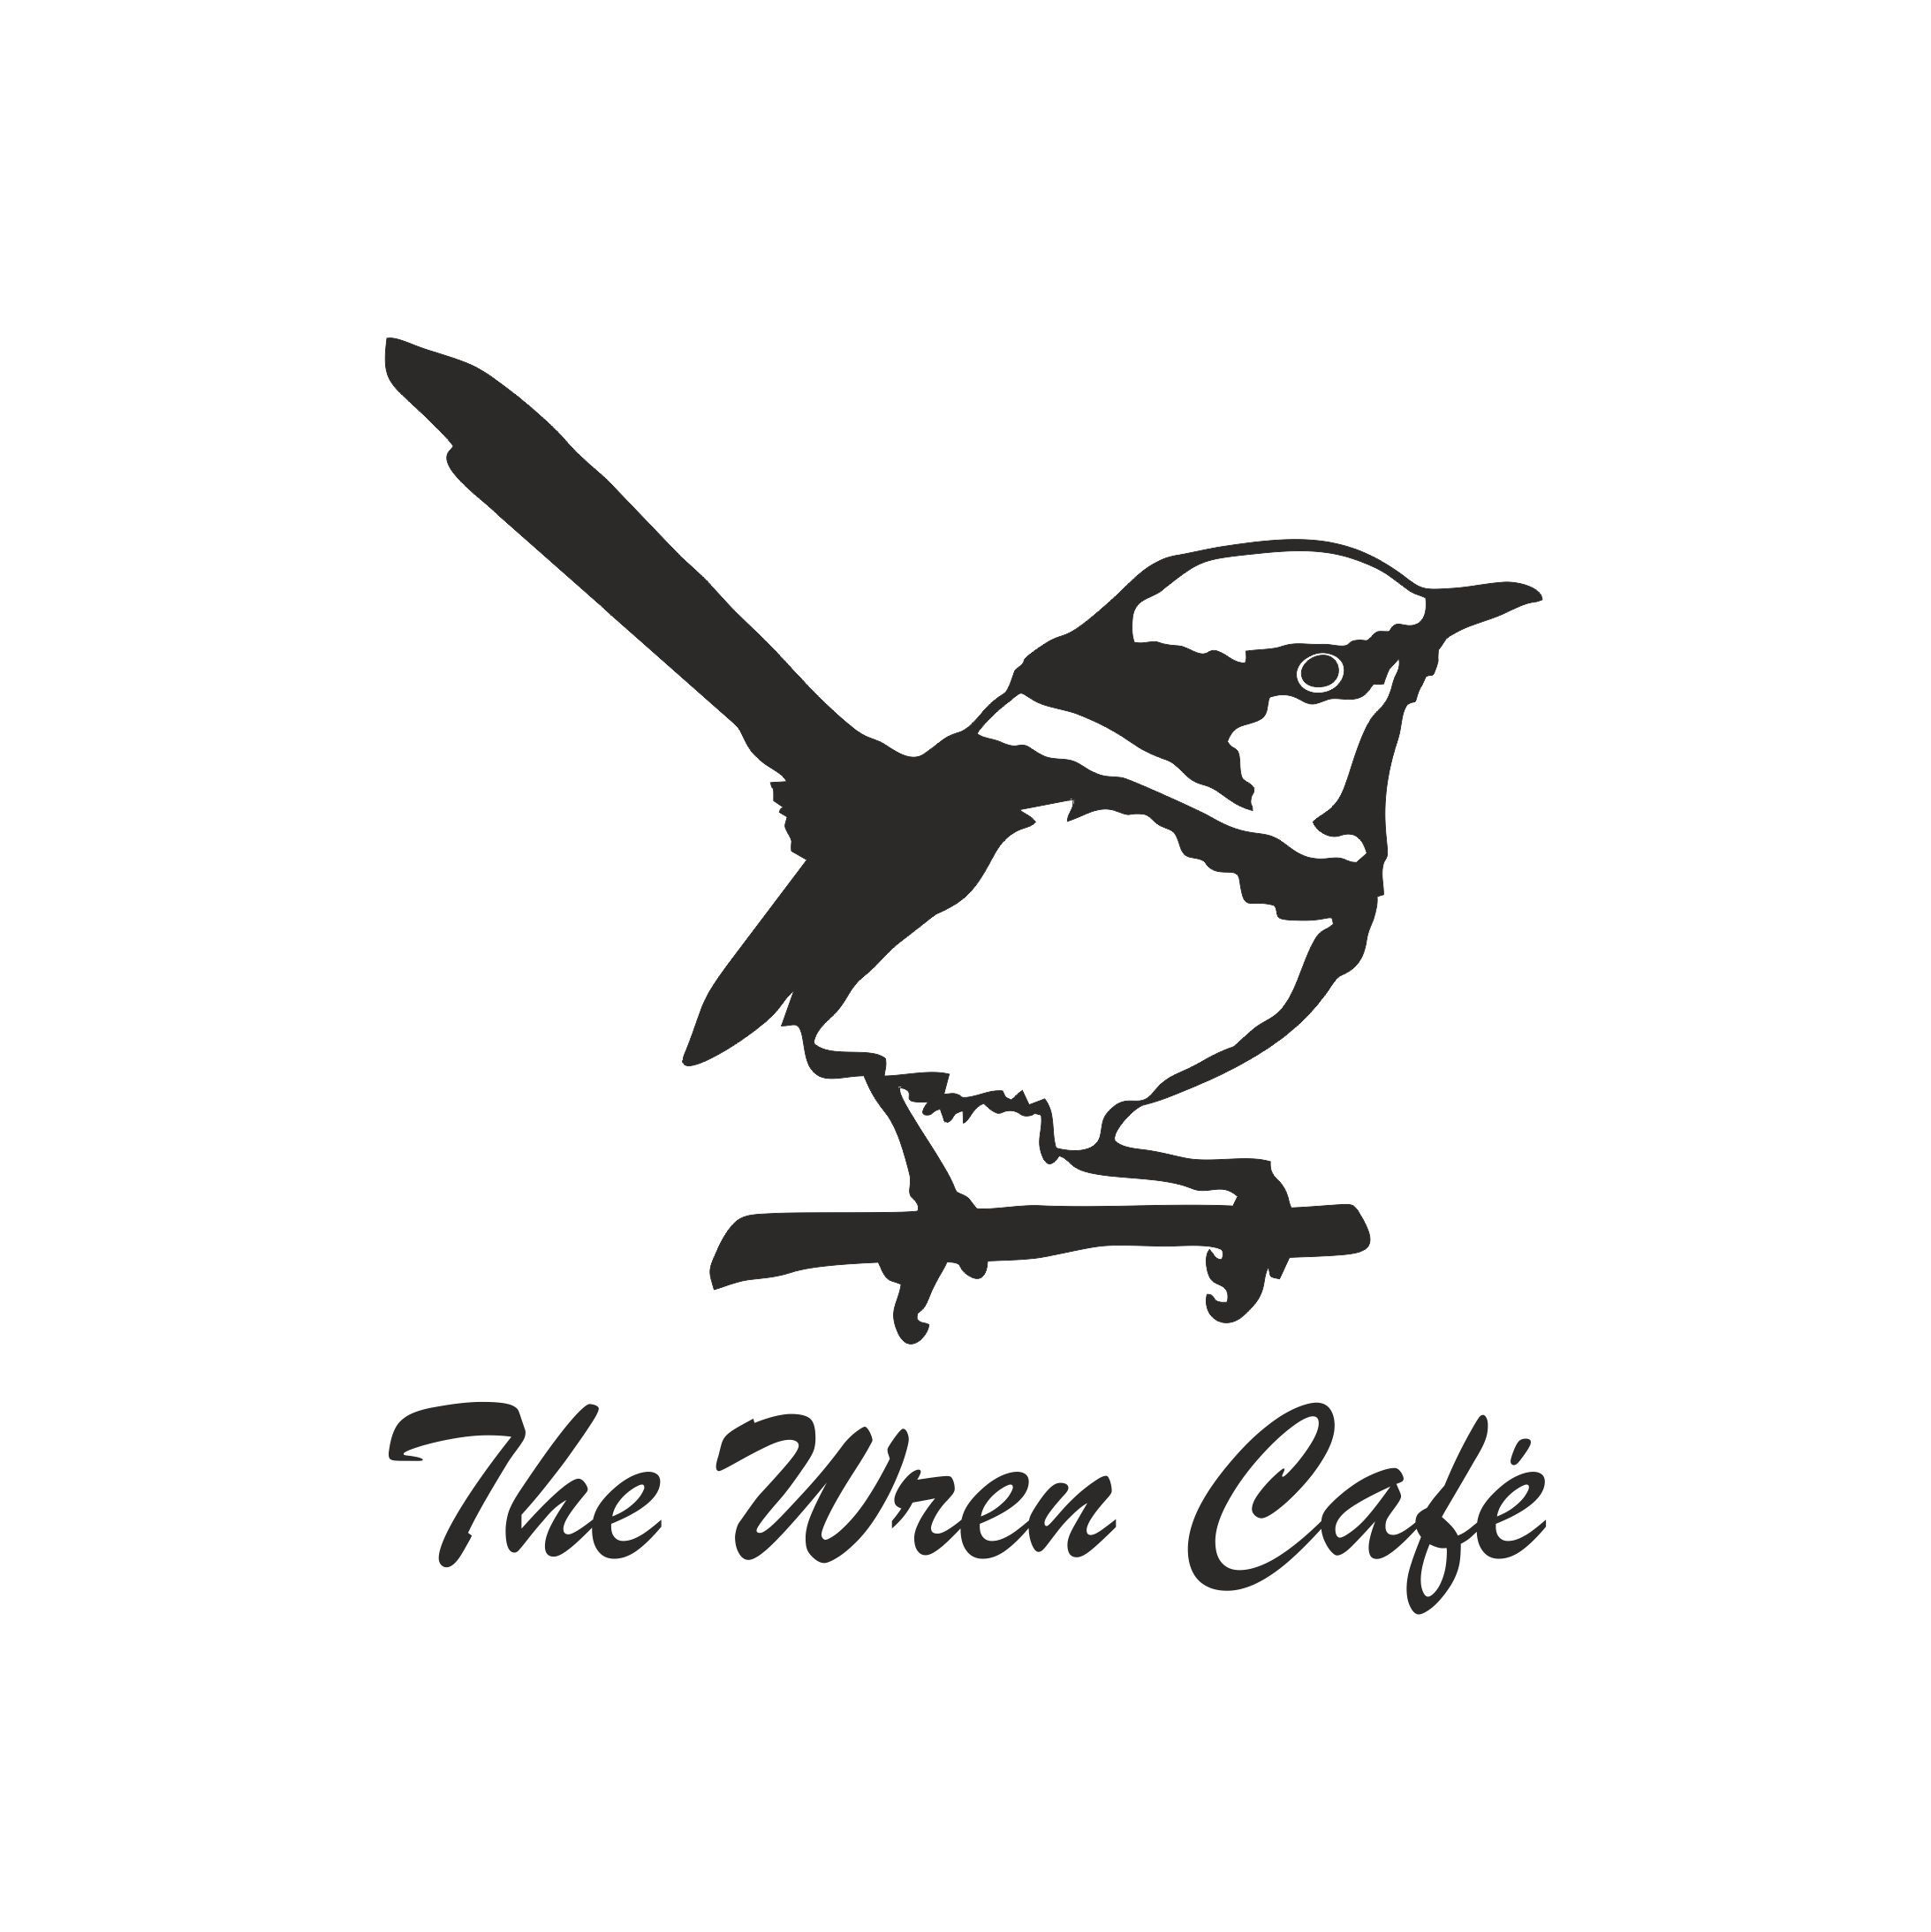 Wren Cafe